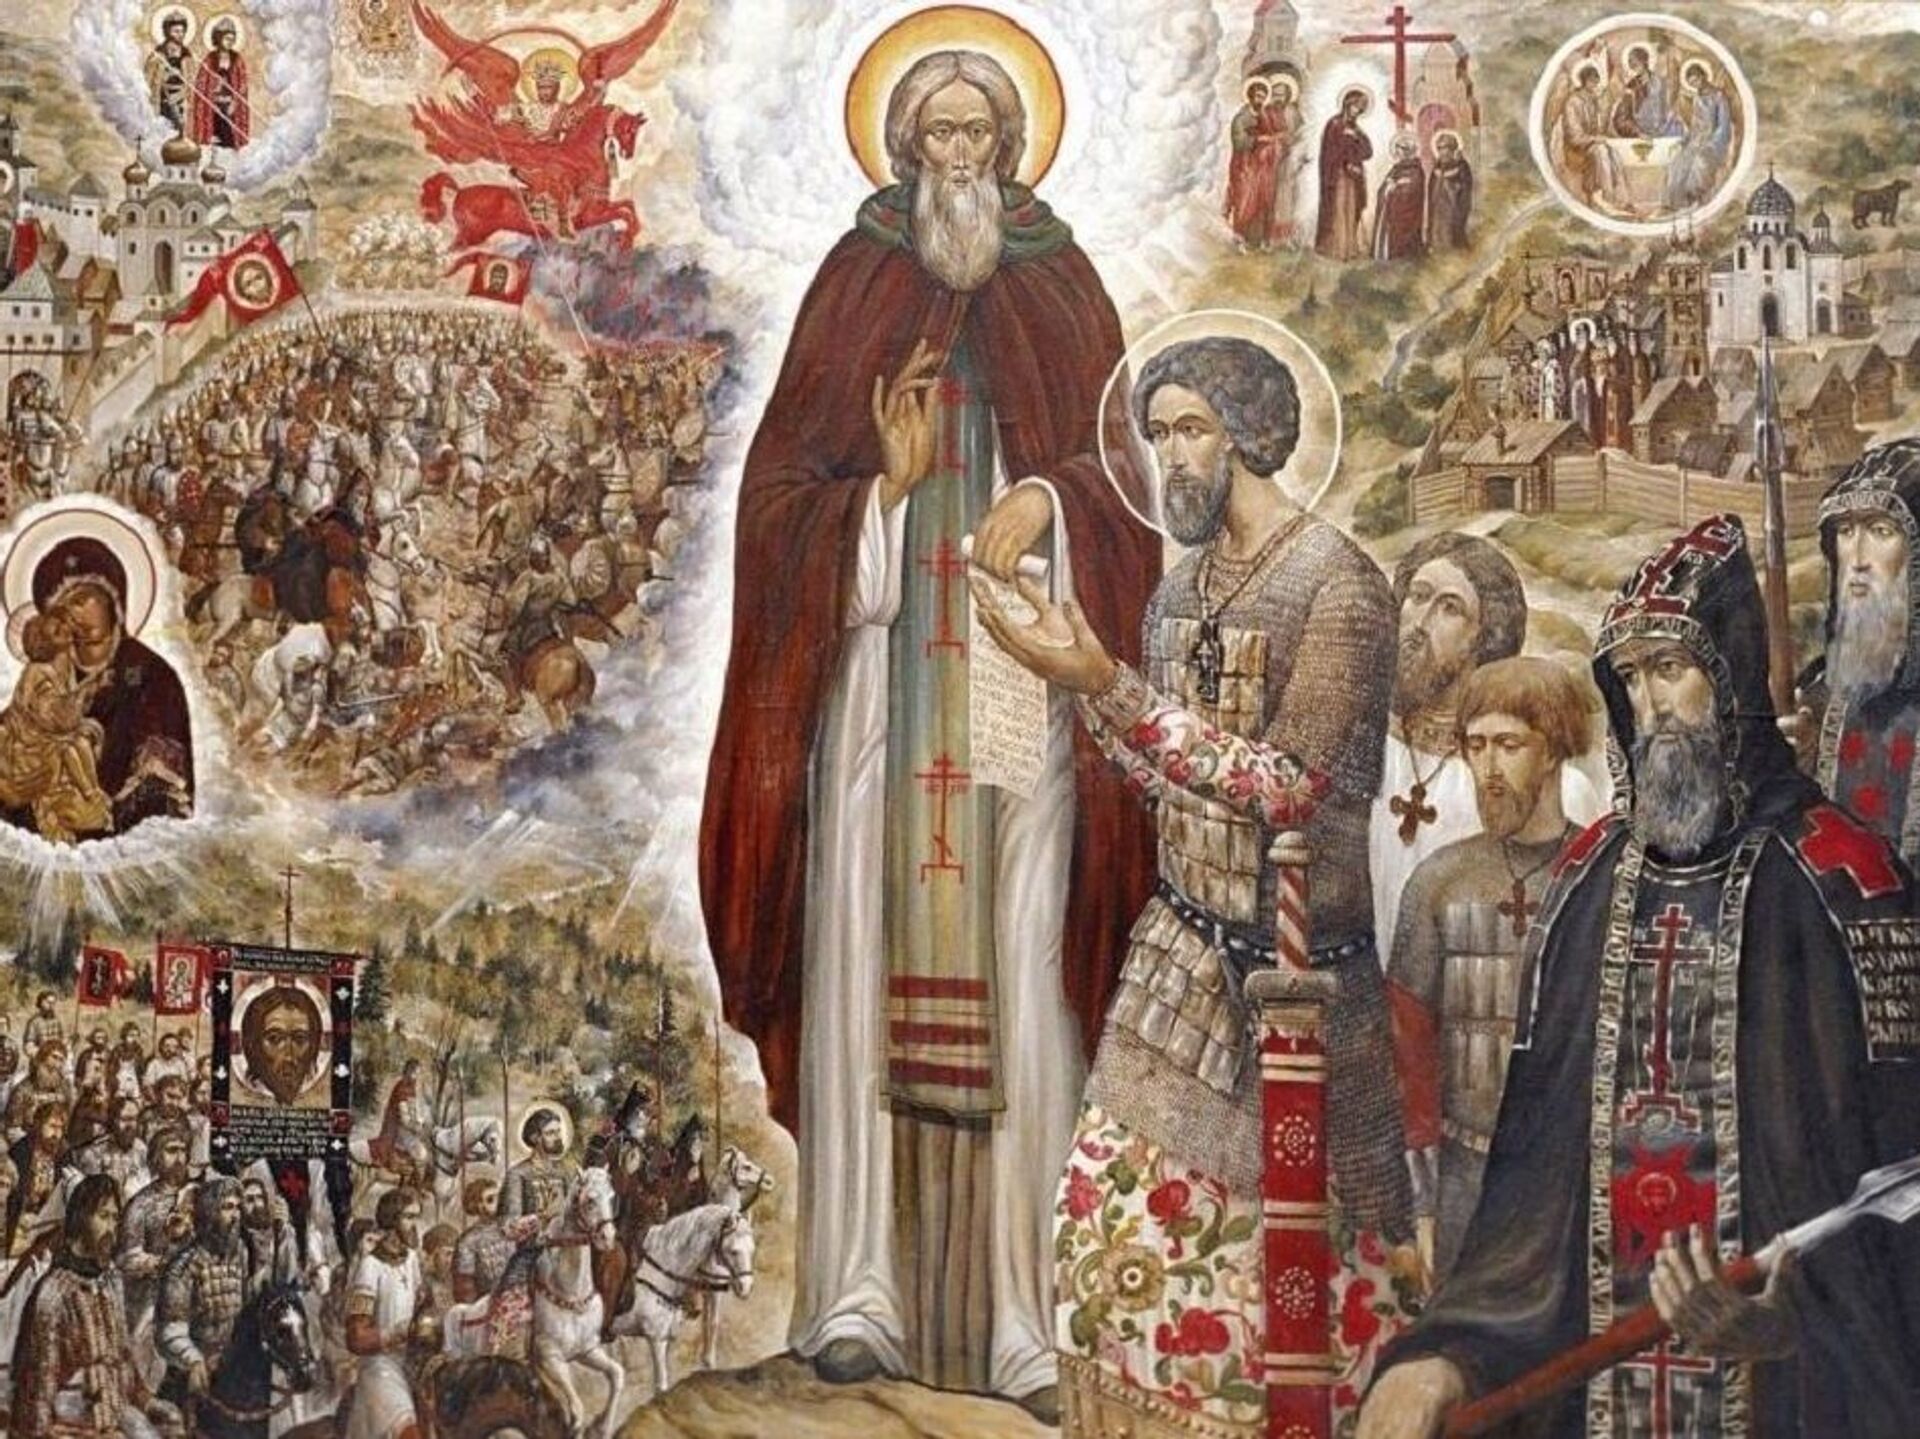 Сила молитвы: два обращения к святому Сергию Радонежского, которые помогут вылечиться даже от смертельных недугов 